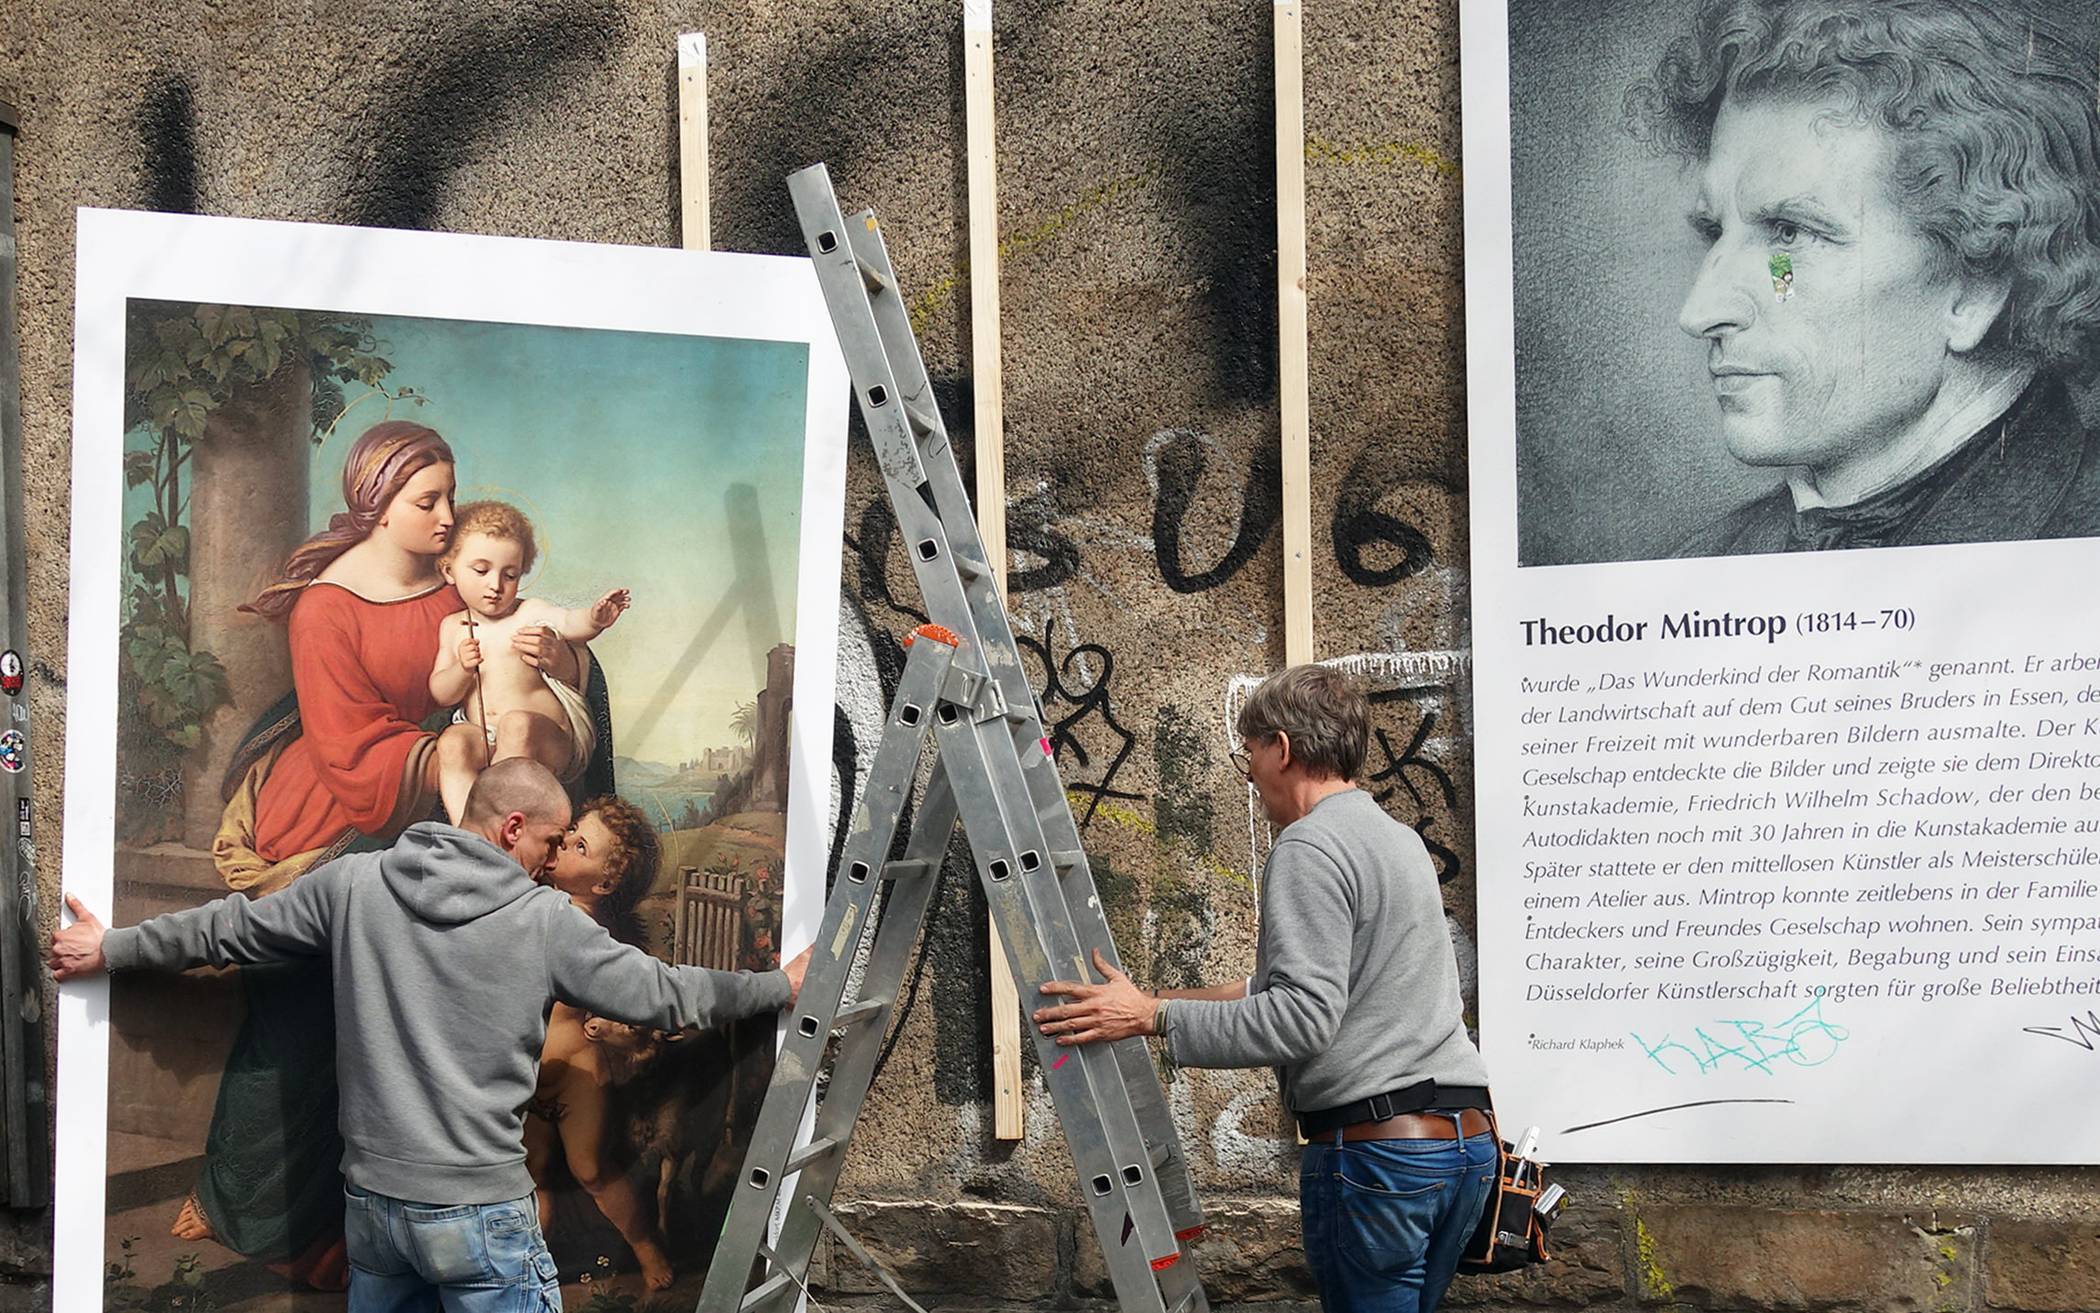  Am Mintropplatz wurden Plakate mit Werken des Künstlers Theodor Mintrop und sein Porträt aufgehängt. 